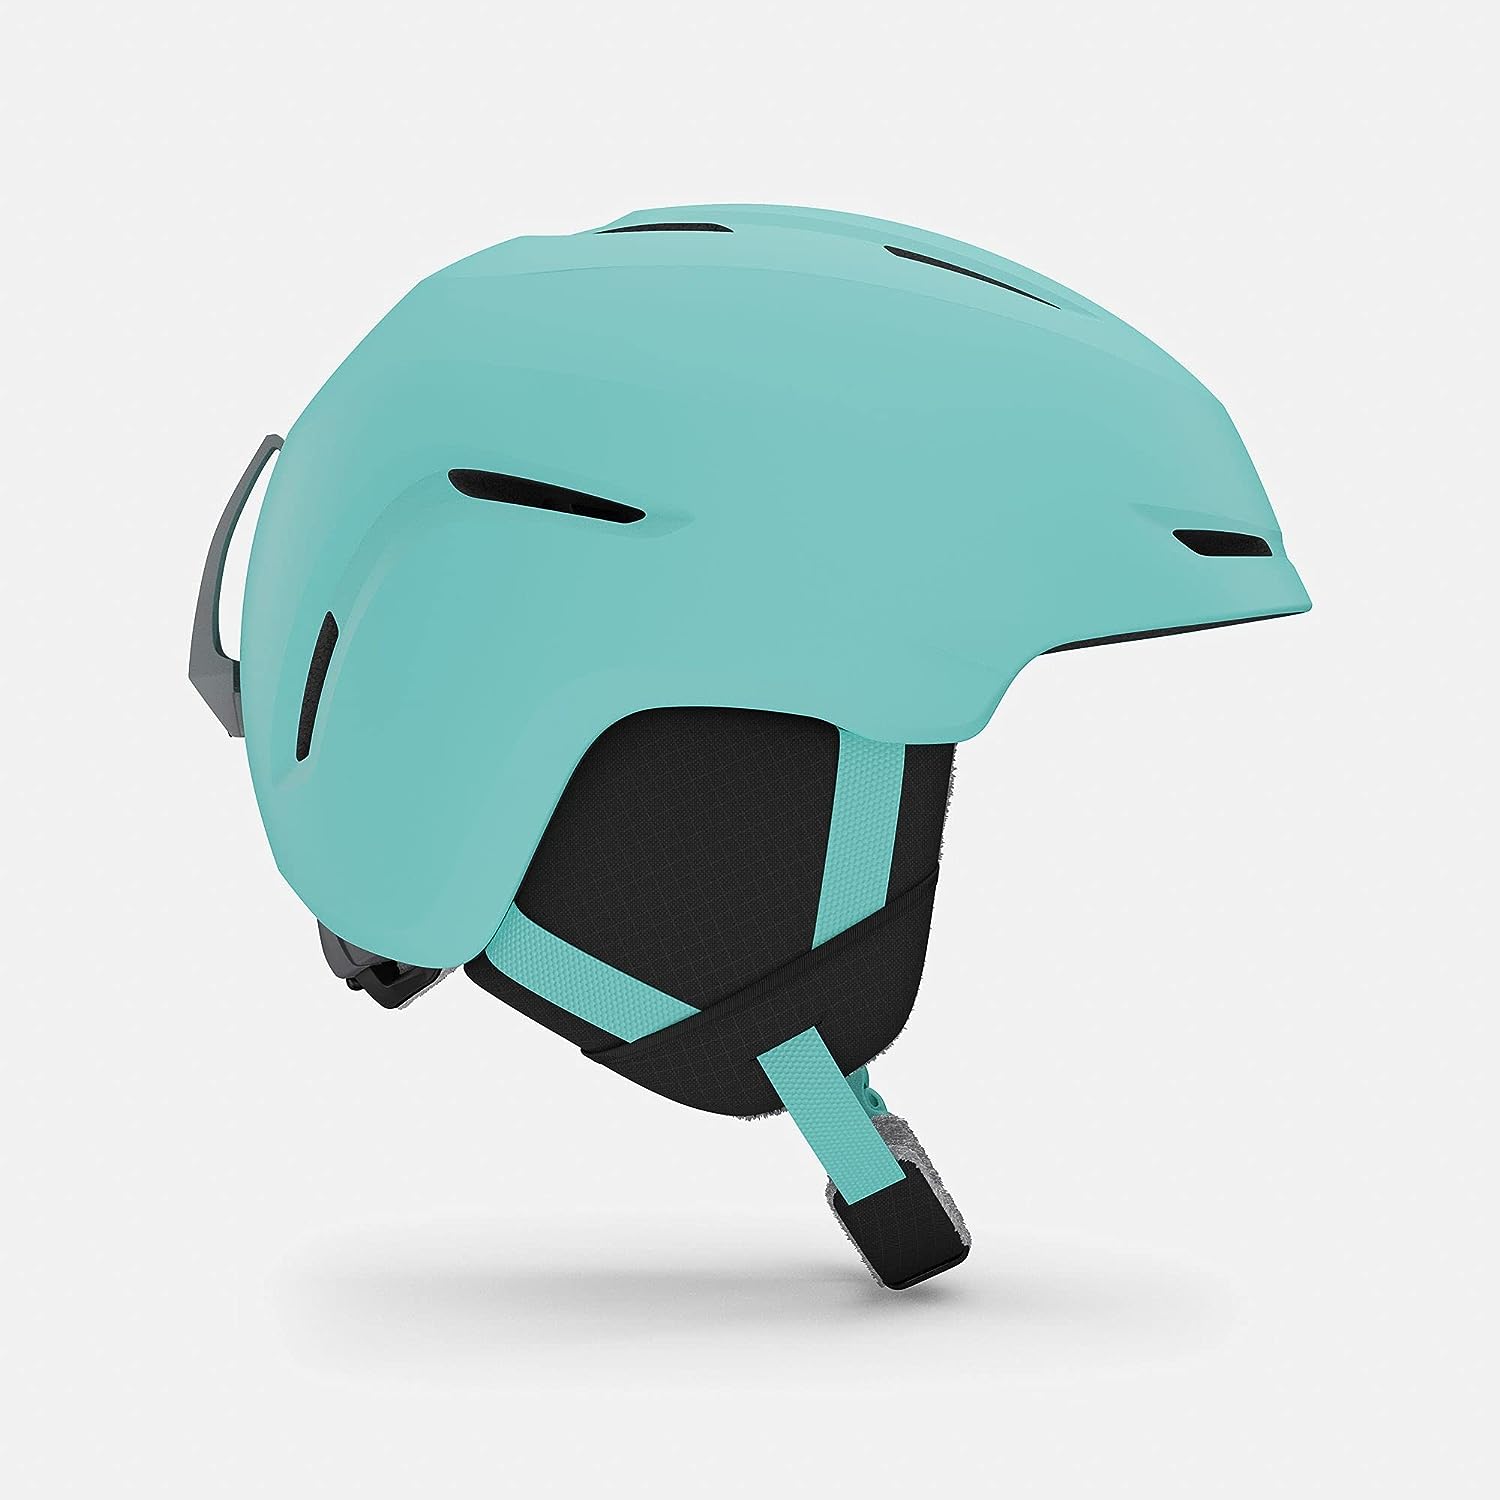 18691円 【SALE】 スノーボード ウィンタースポーツ 海外モデル ヨーロッパモデル アメリカモデル Giro Launch CP Youth Snow Ski Helmet w Matching Goggles Matte Glacier Rock Disco Bスノーボード